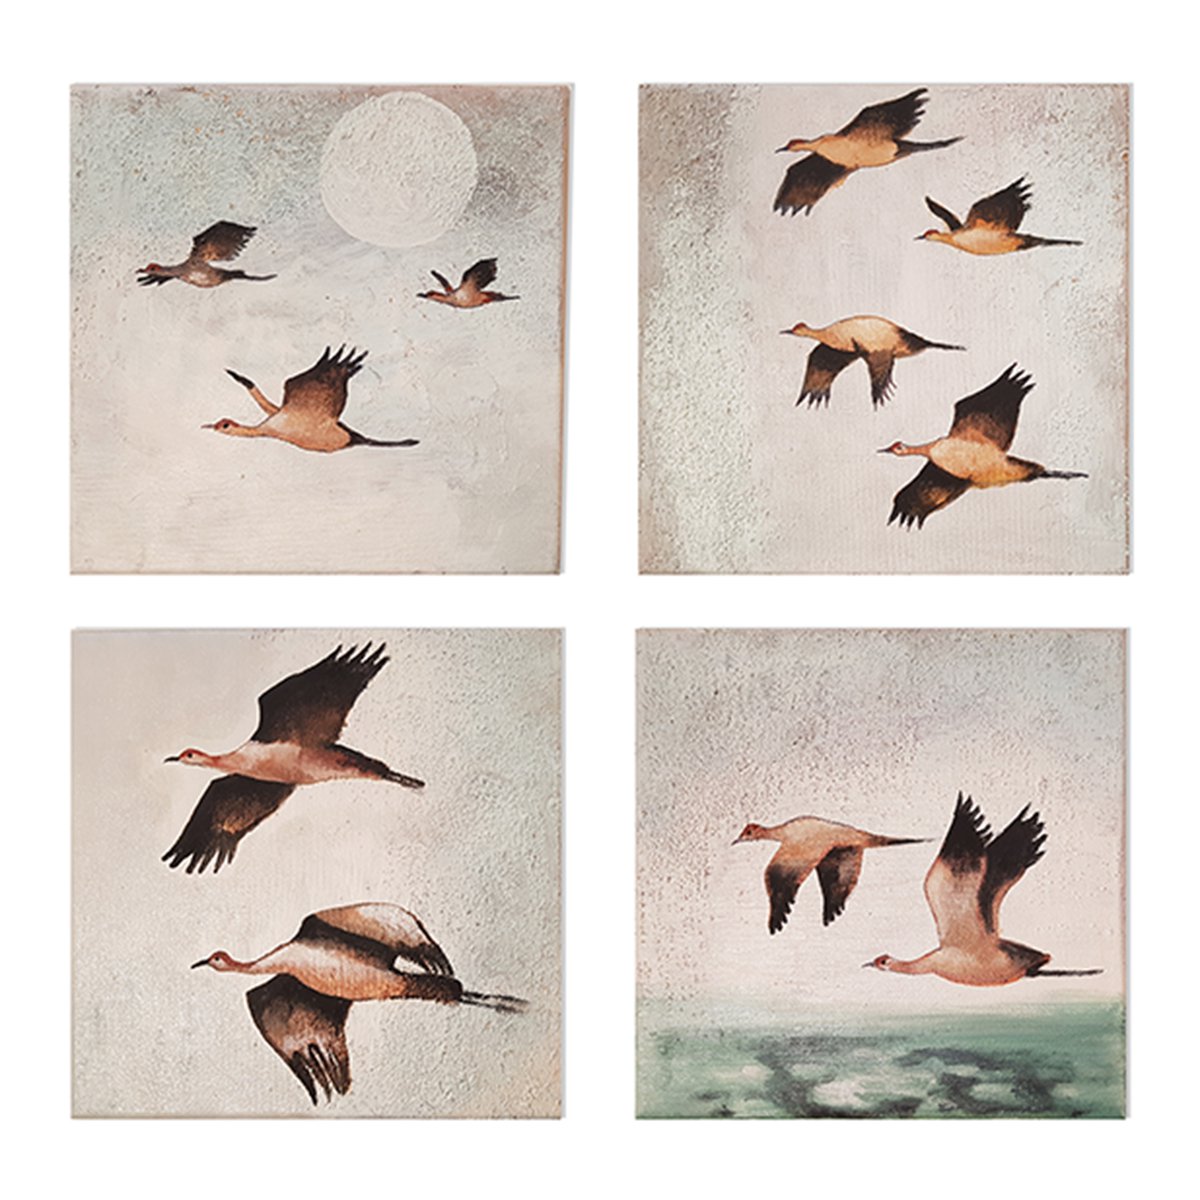 Birds by Amalia Maciuca